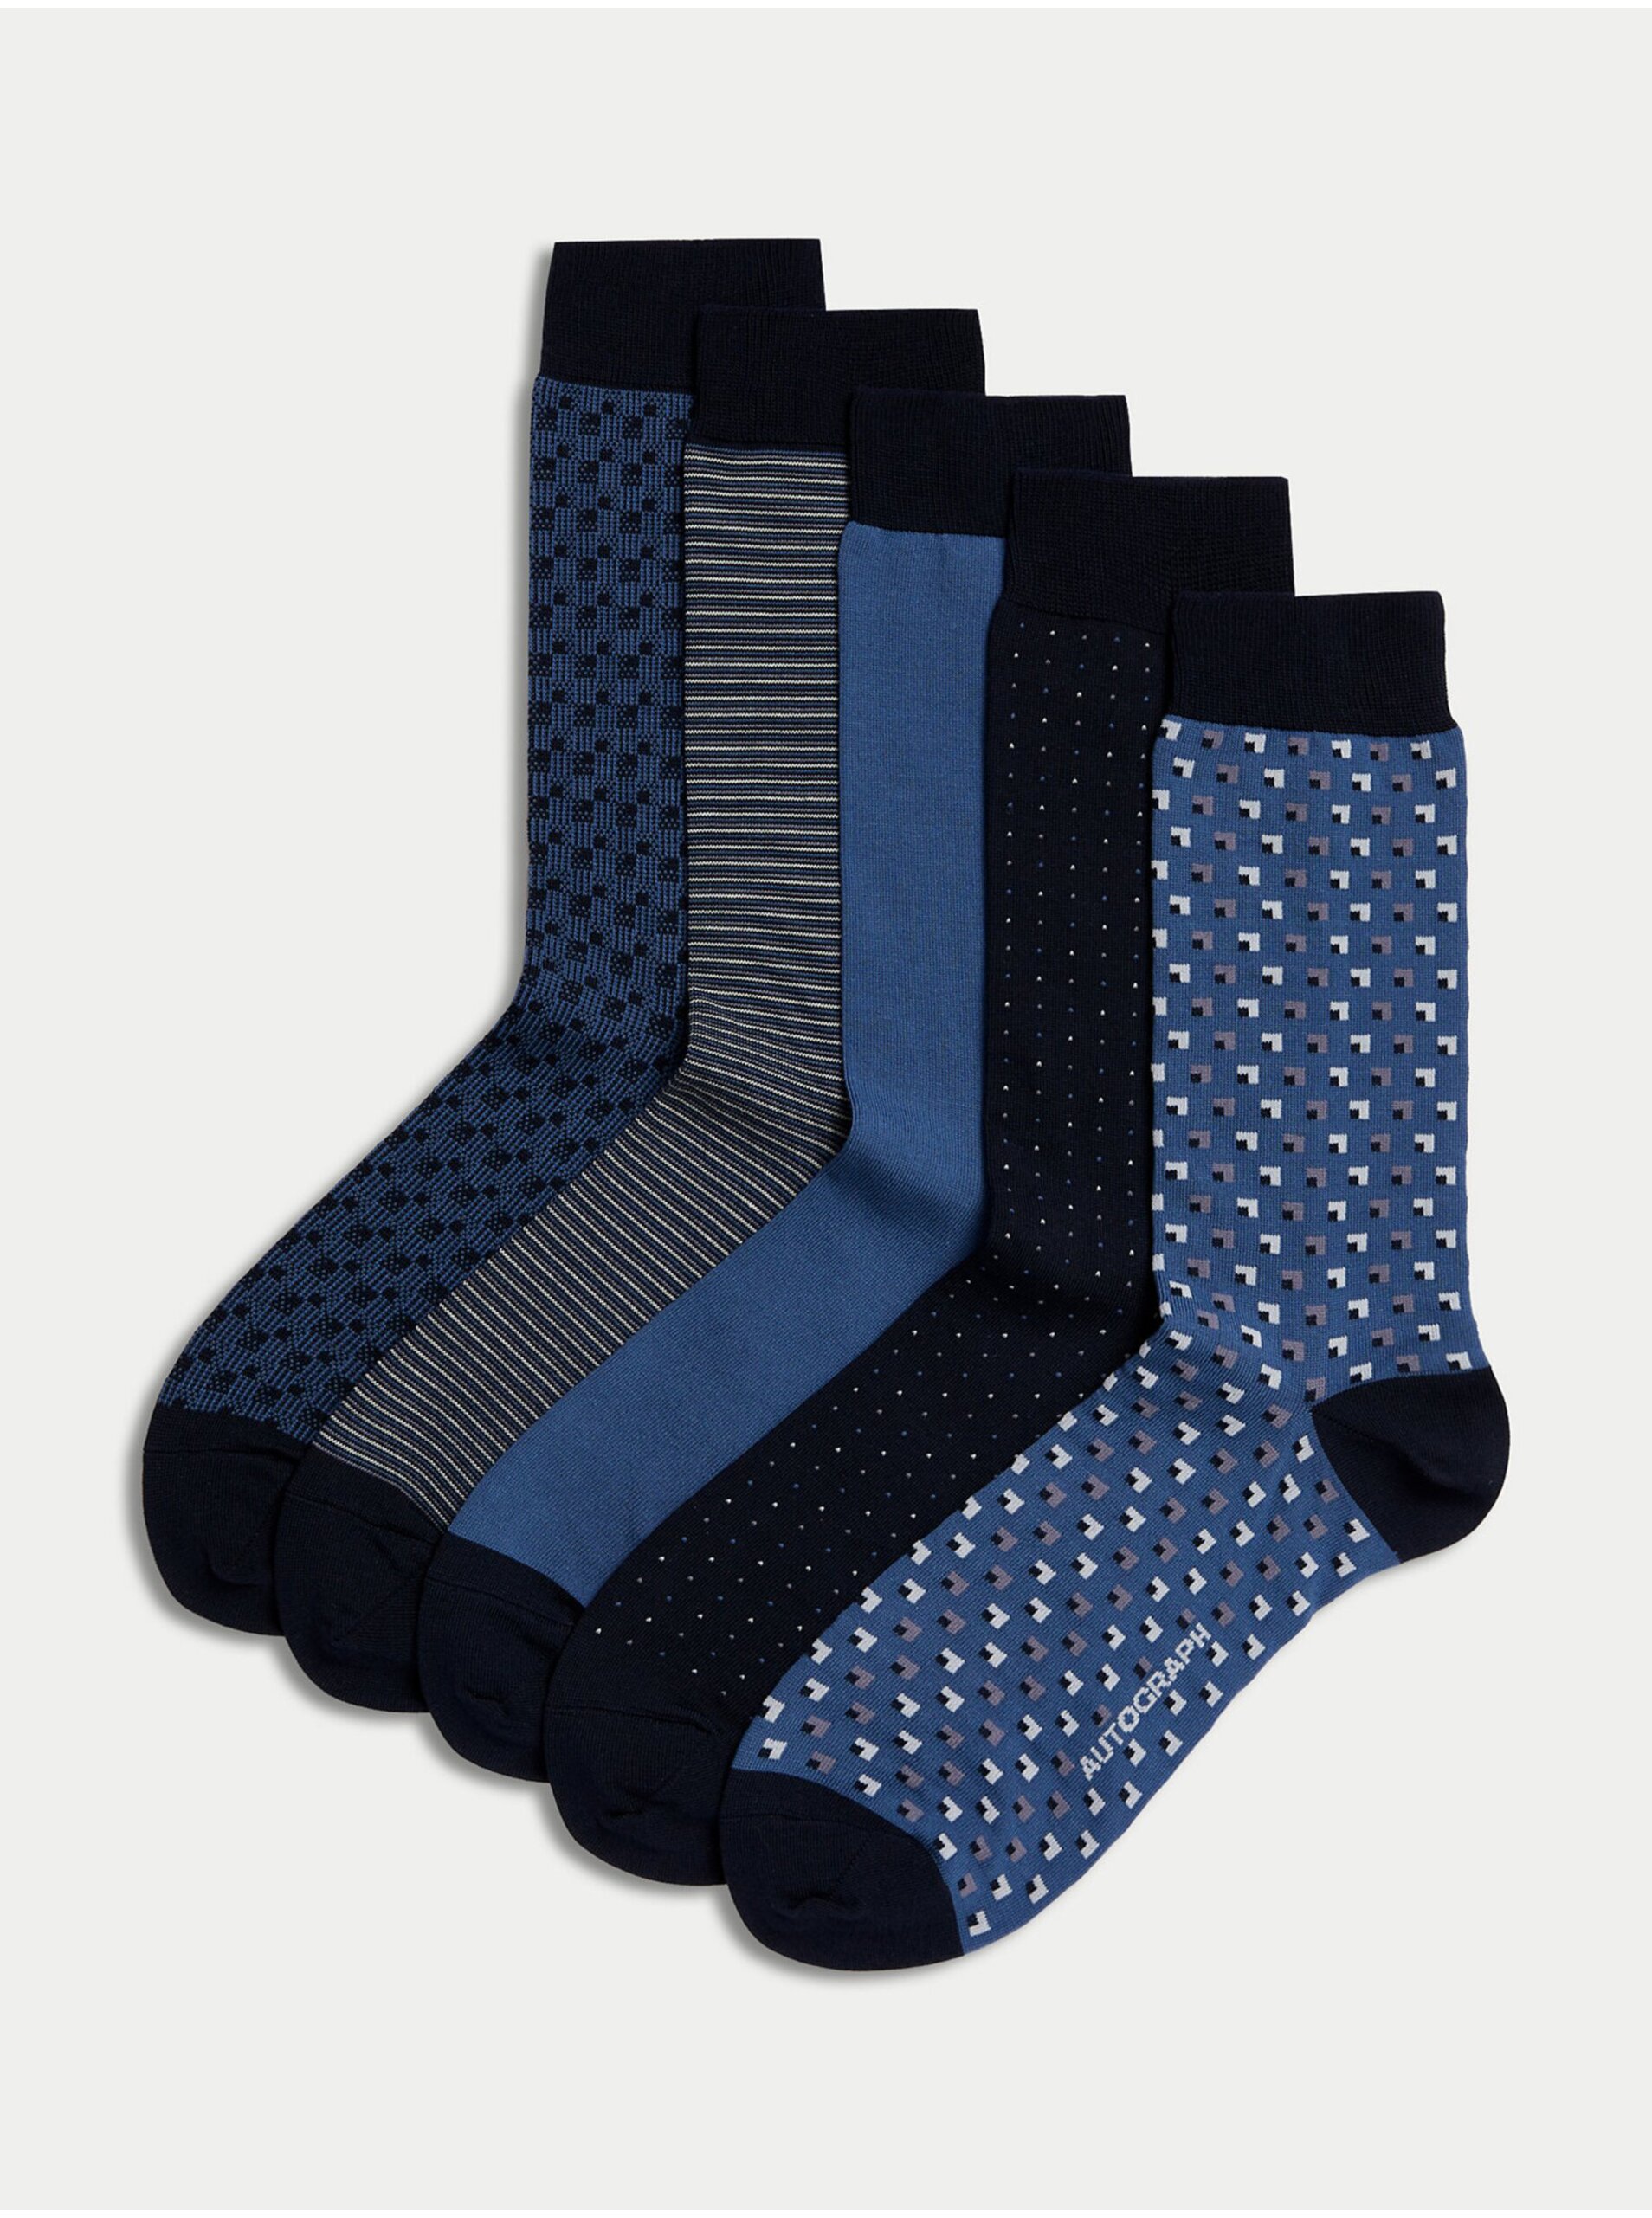 Lacno Sada piatich párov pánskych ponožiek v modrej, čiernej a tmavomodrej farbe Marks & Spencer Pima